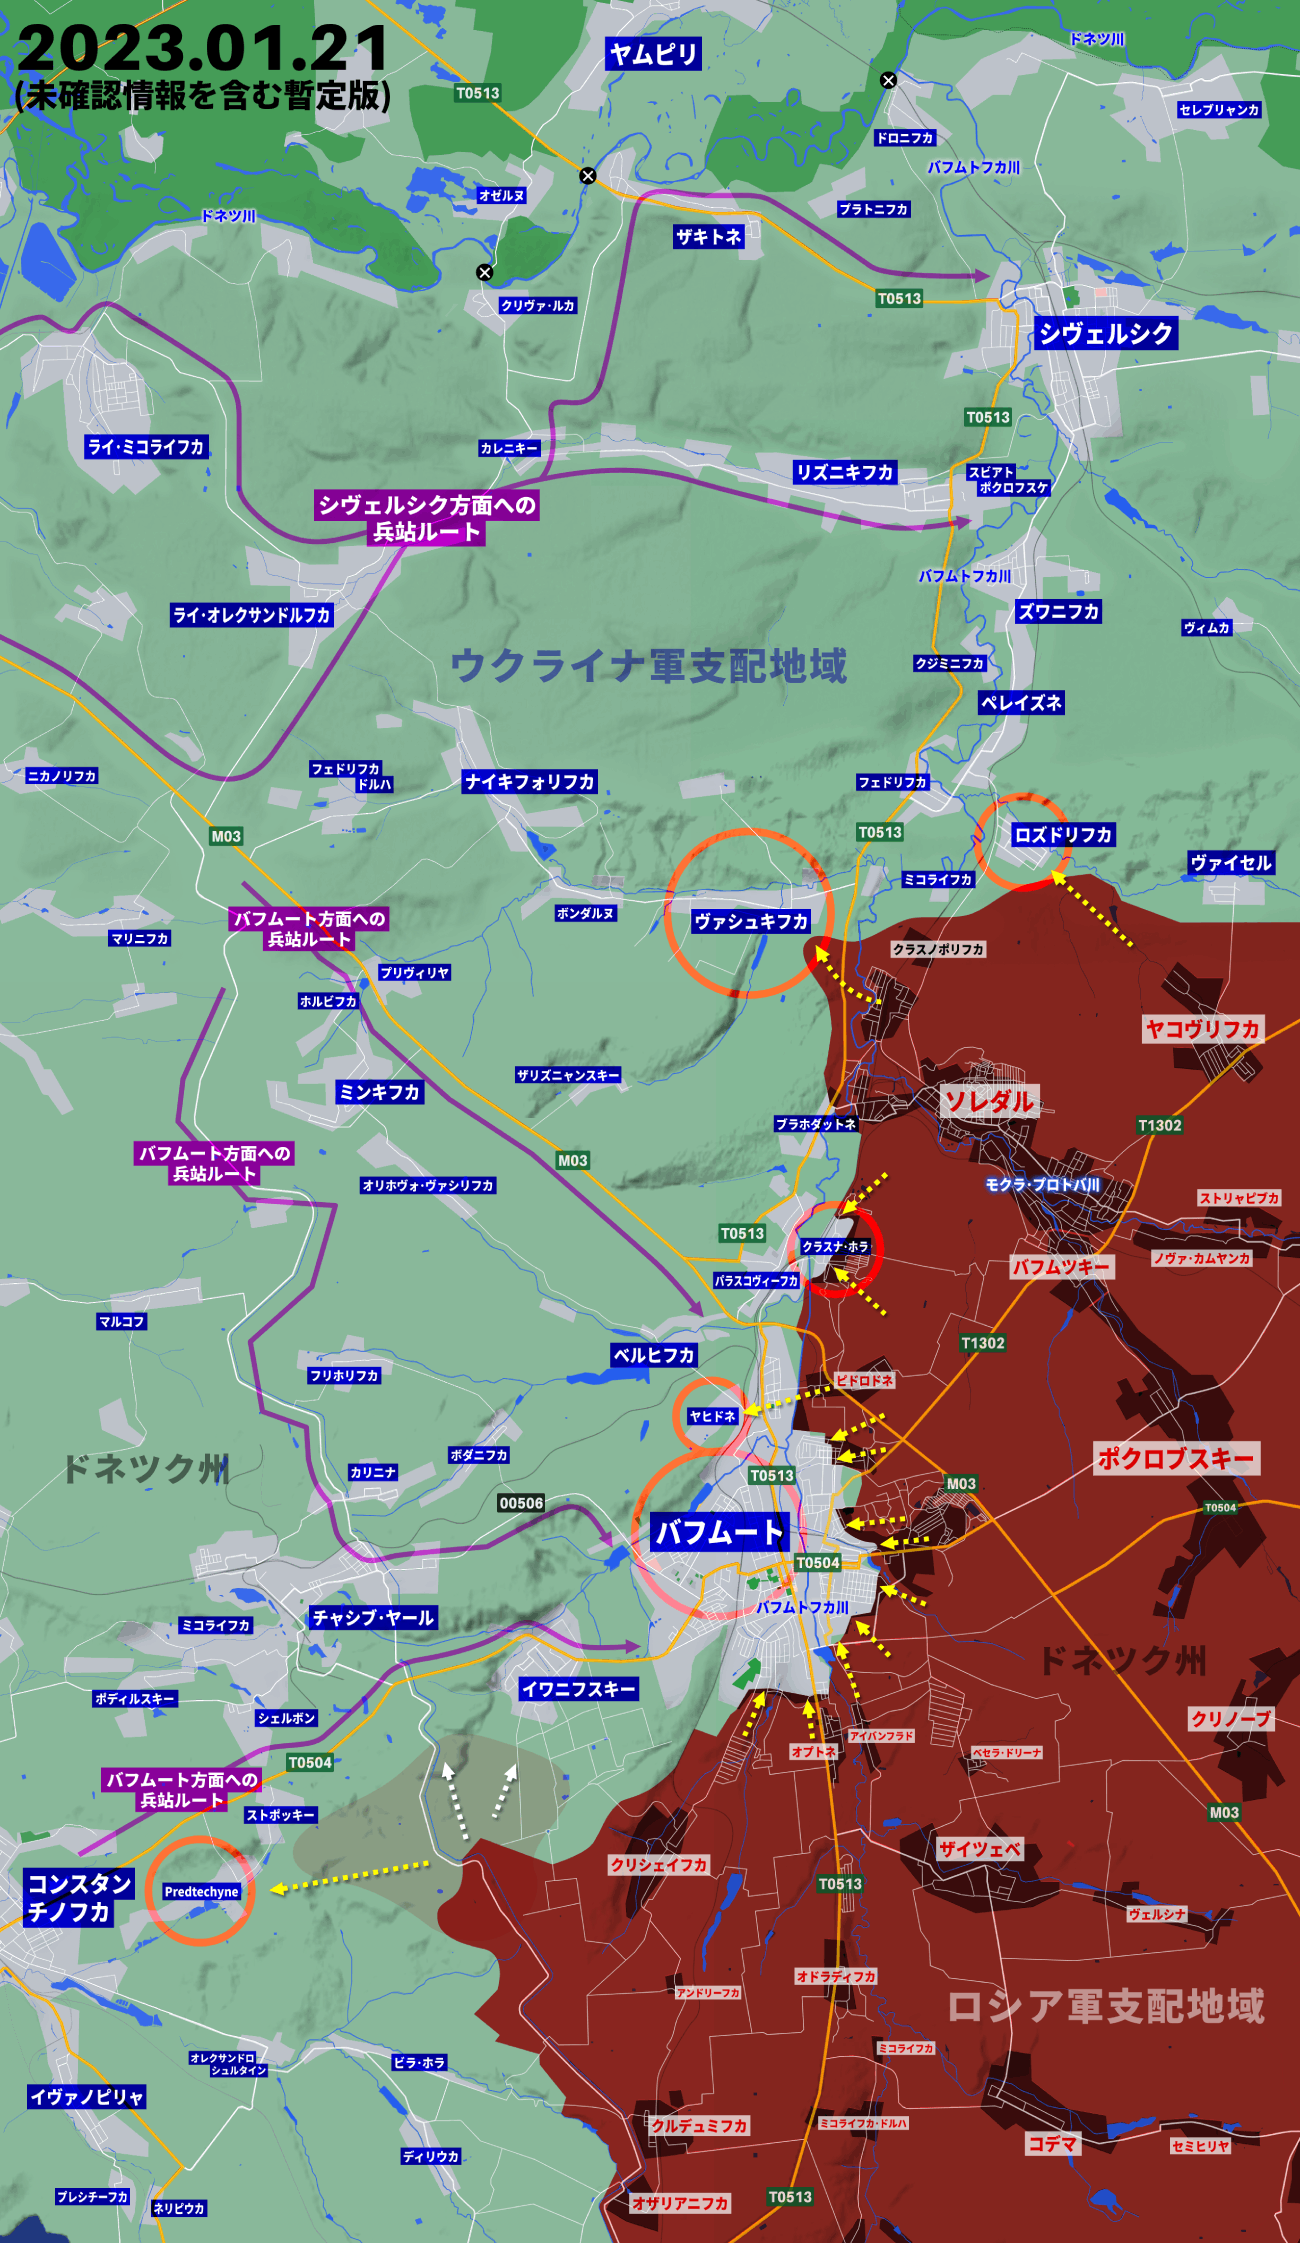 ウクライナ侵攻331日目の戦況、ロシア軍がバフムート包囲に向けて前進